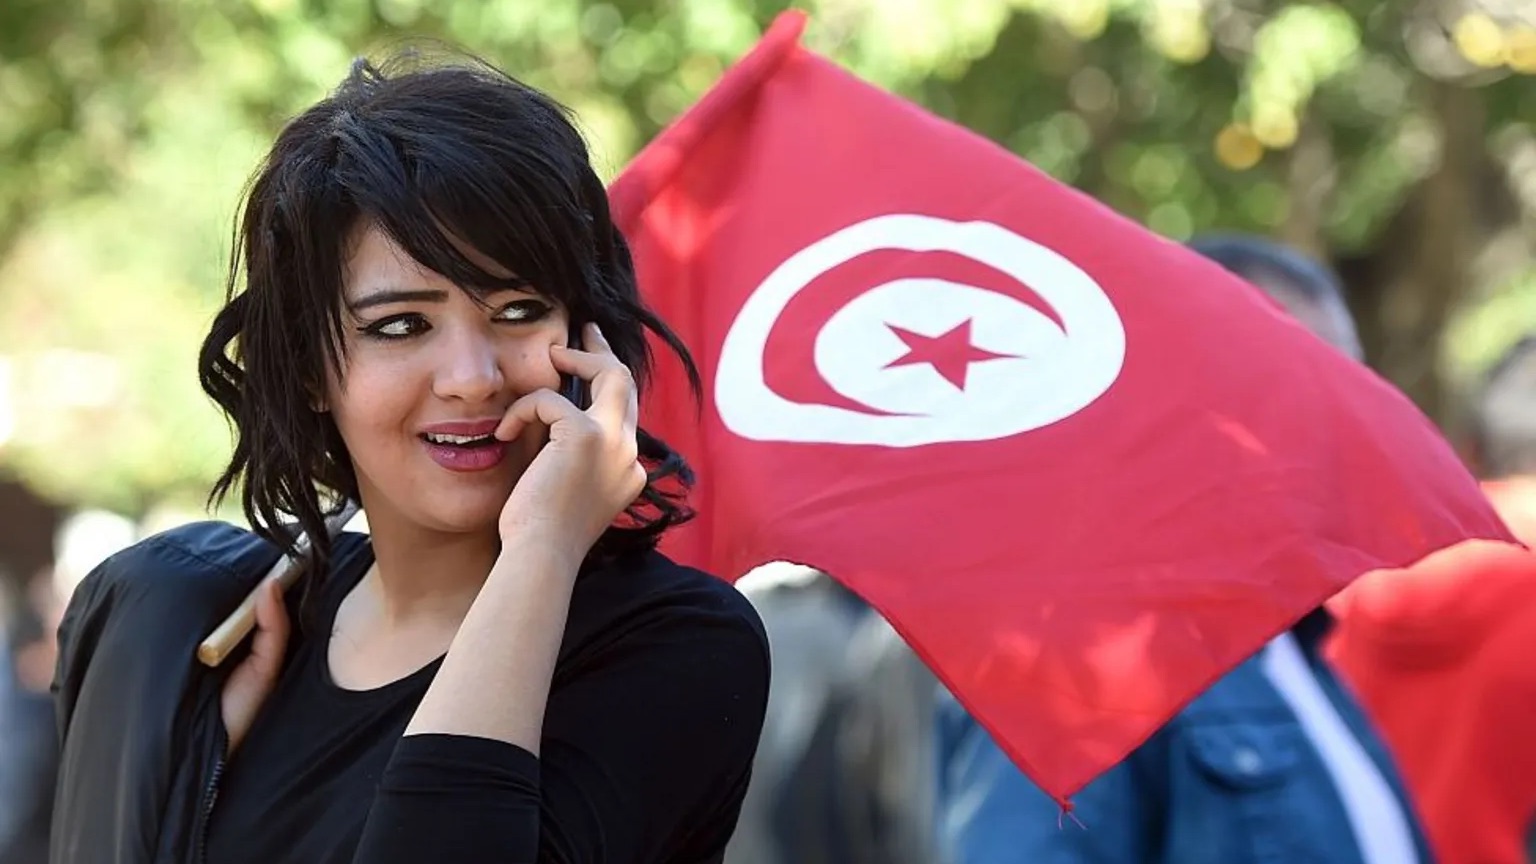 خاضت تونس على امتداد عقود معارك ضارية مع التيارات الايديولوجية والأحزاب الإسلامية لترسيخ حقوق المرأة وتدعيمها